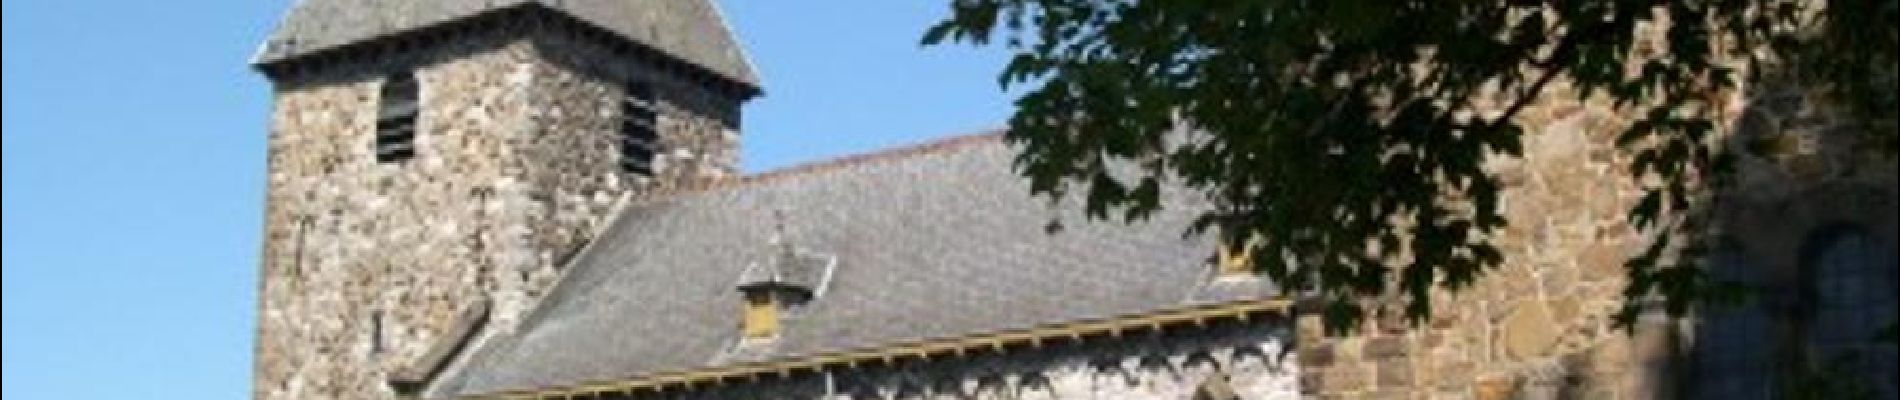 POI Andenne - Eglise Saint-Pierre dite des Sarrasins d'Andenelle - Photo